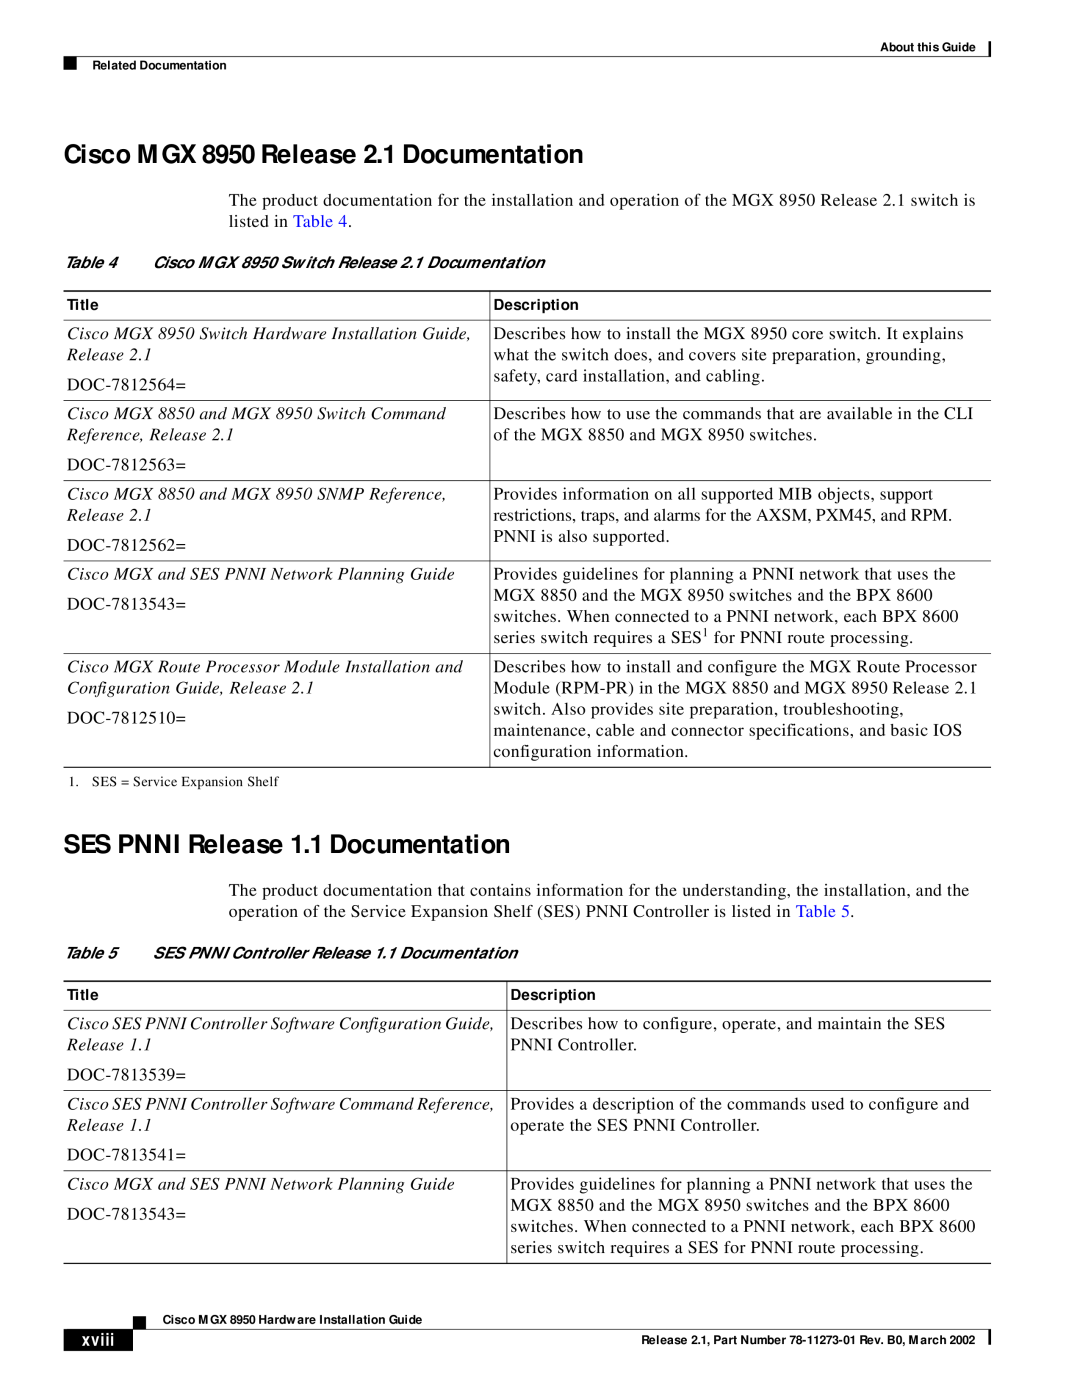 Cisco Systems Cisco MGX 8950 Release 2.1 Documentation, SES PNNI Release 1.1 Documentation, Title, Description, xviii 